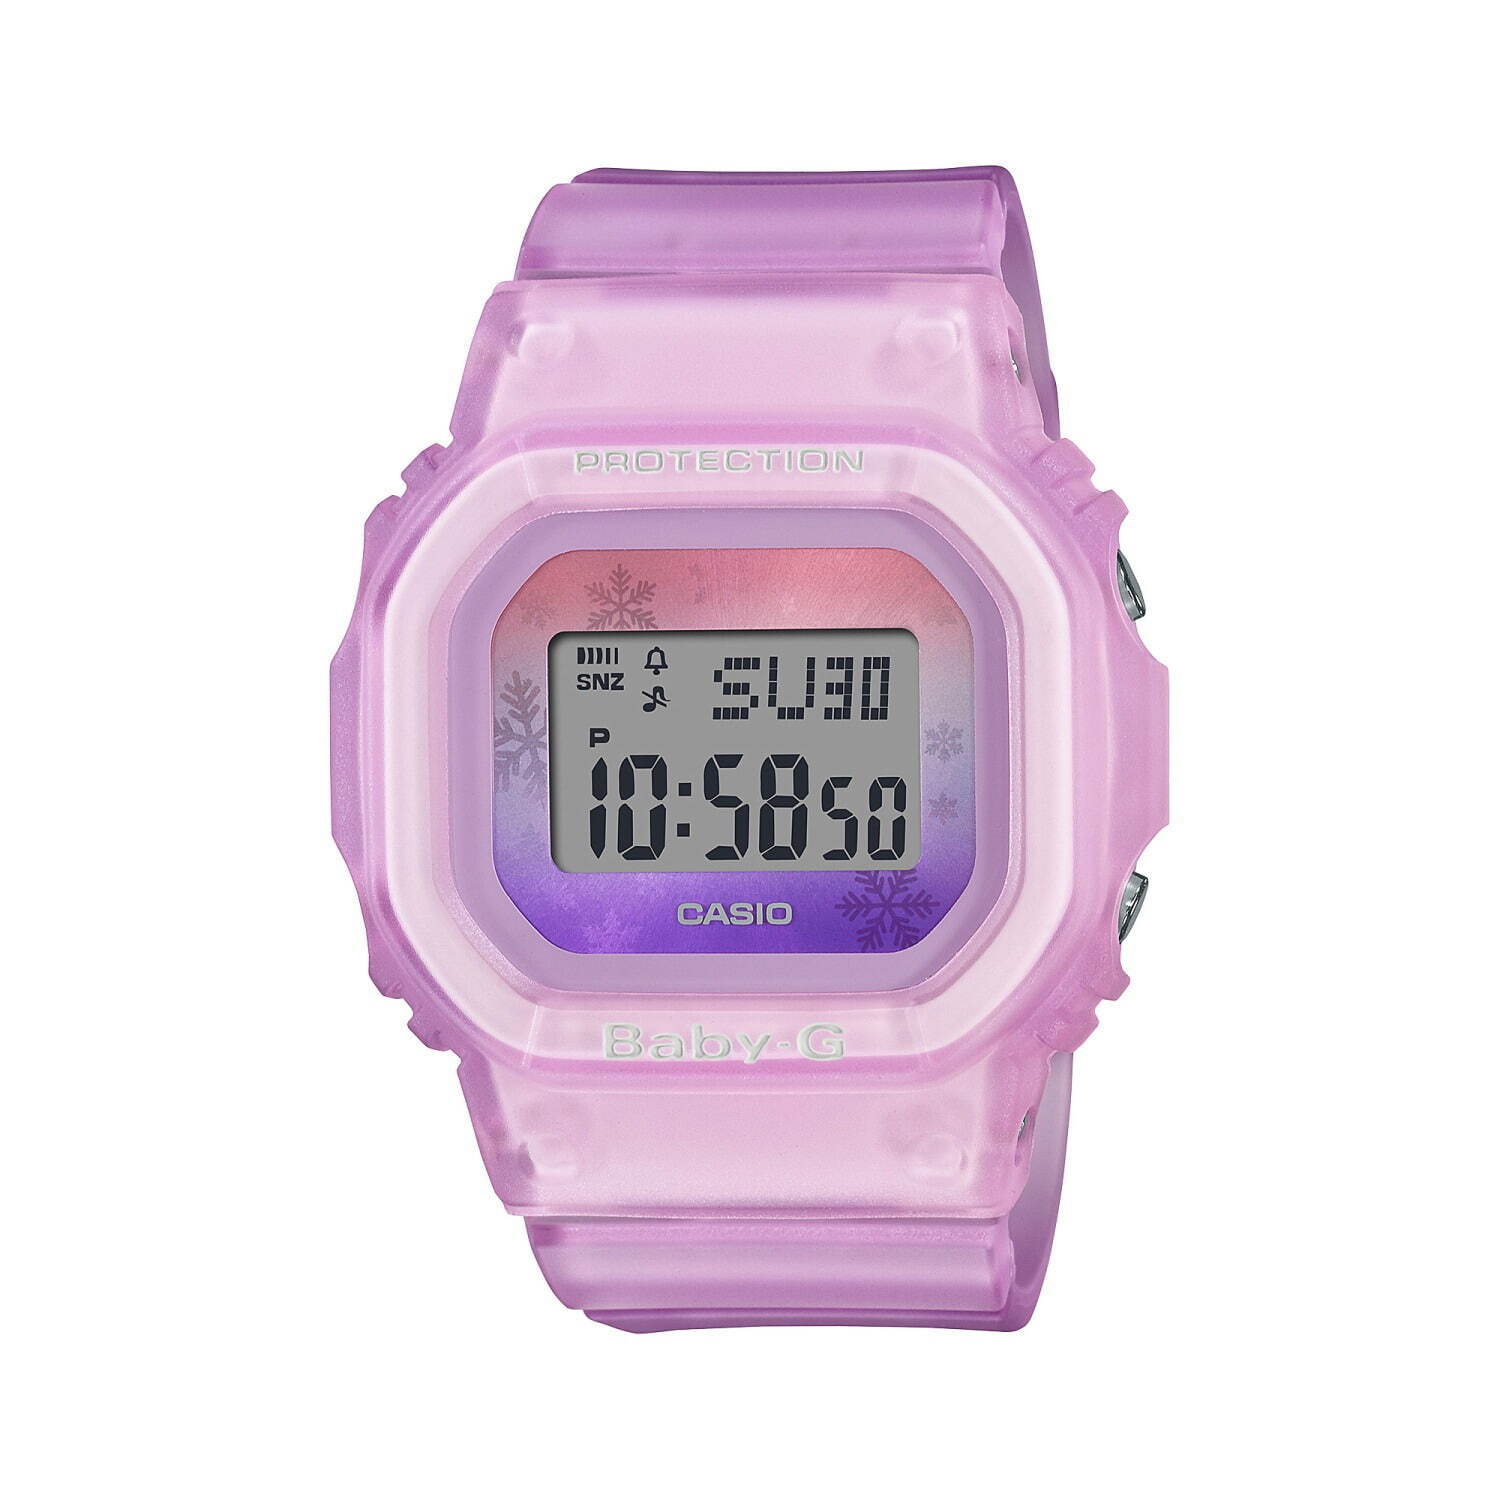 レディース腕時計「BABY-G」特集-プレゼントやギフトに、くすみカラー